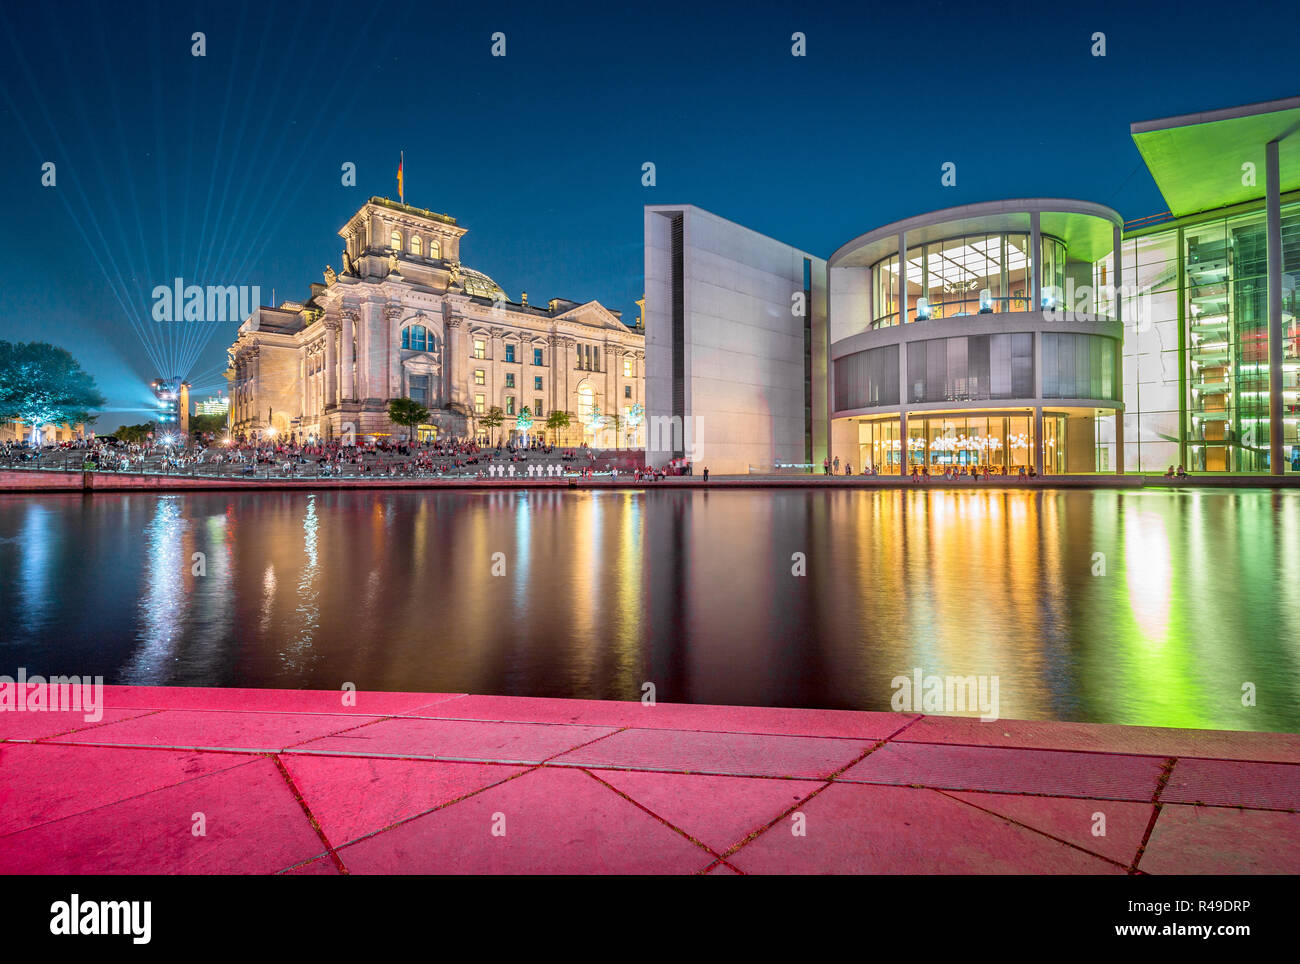 Vue panoramique de crépuscule célèbre quartier du gouvernement de Berlin au cours de la Spree avec blue hour au crépuscule, au centre de Berlin Mitte, Allemagne Banque D'Images